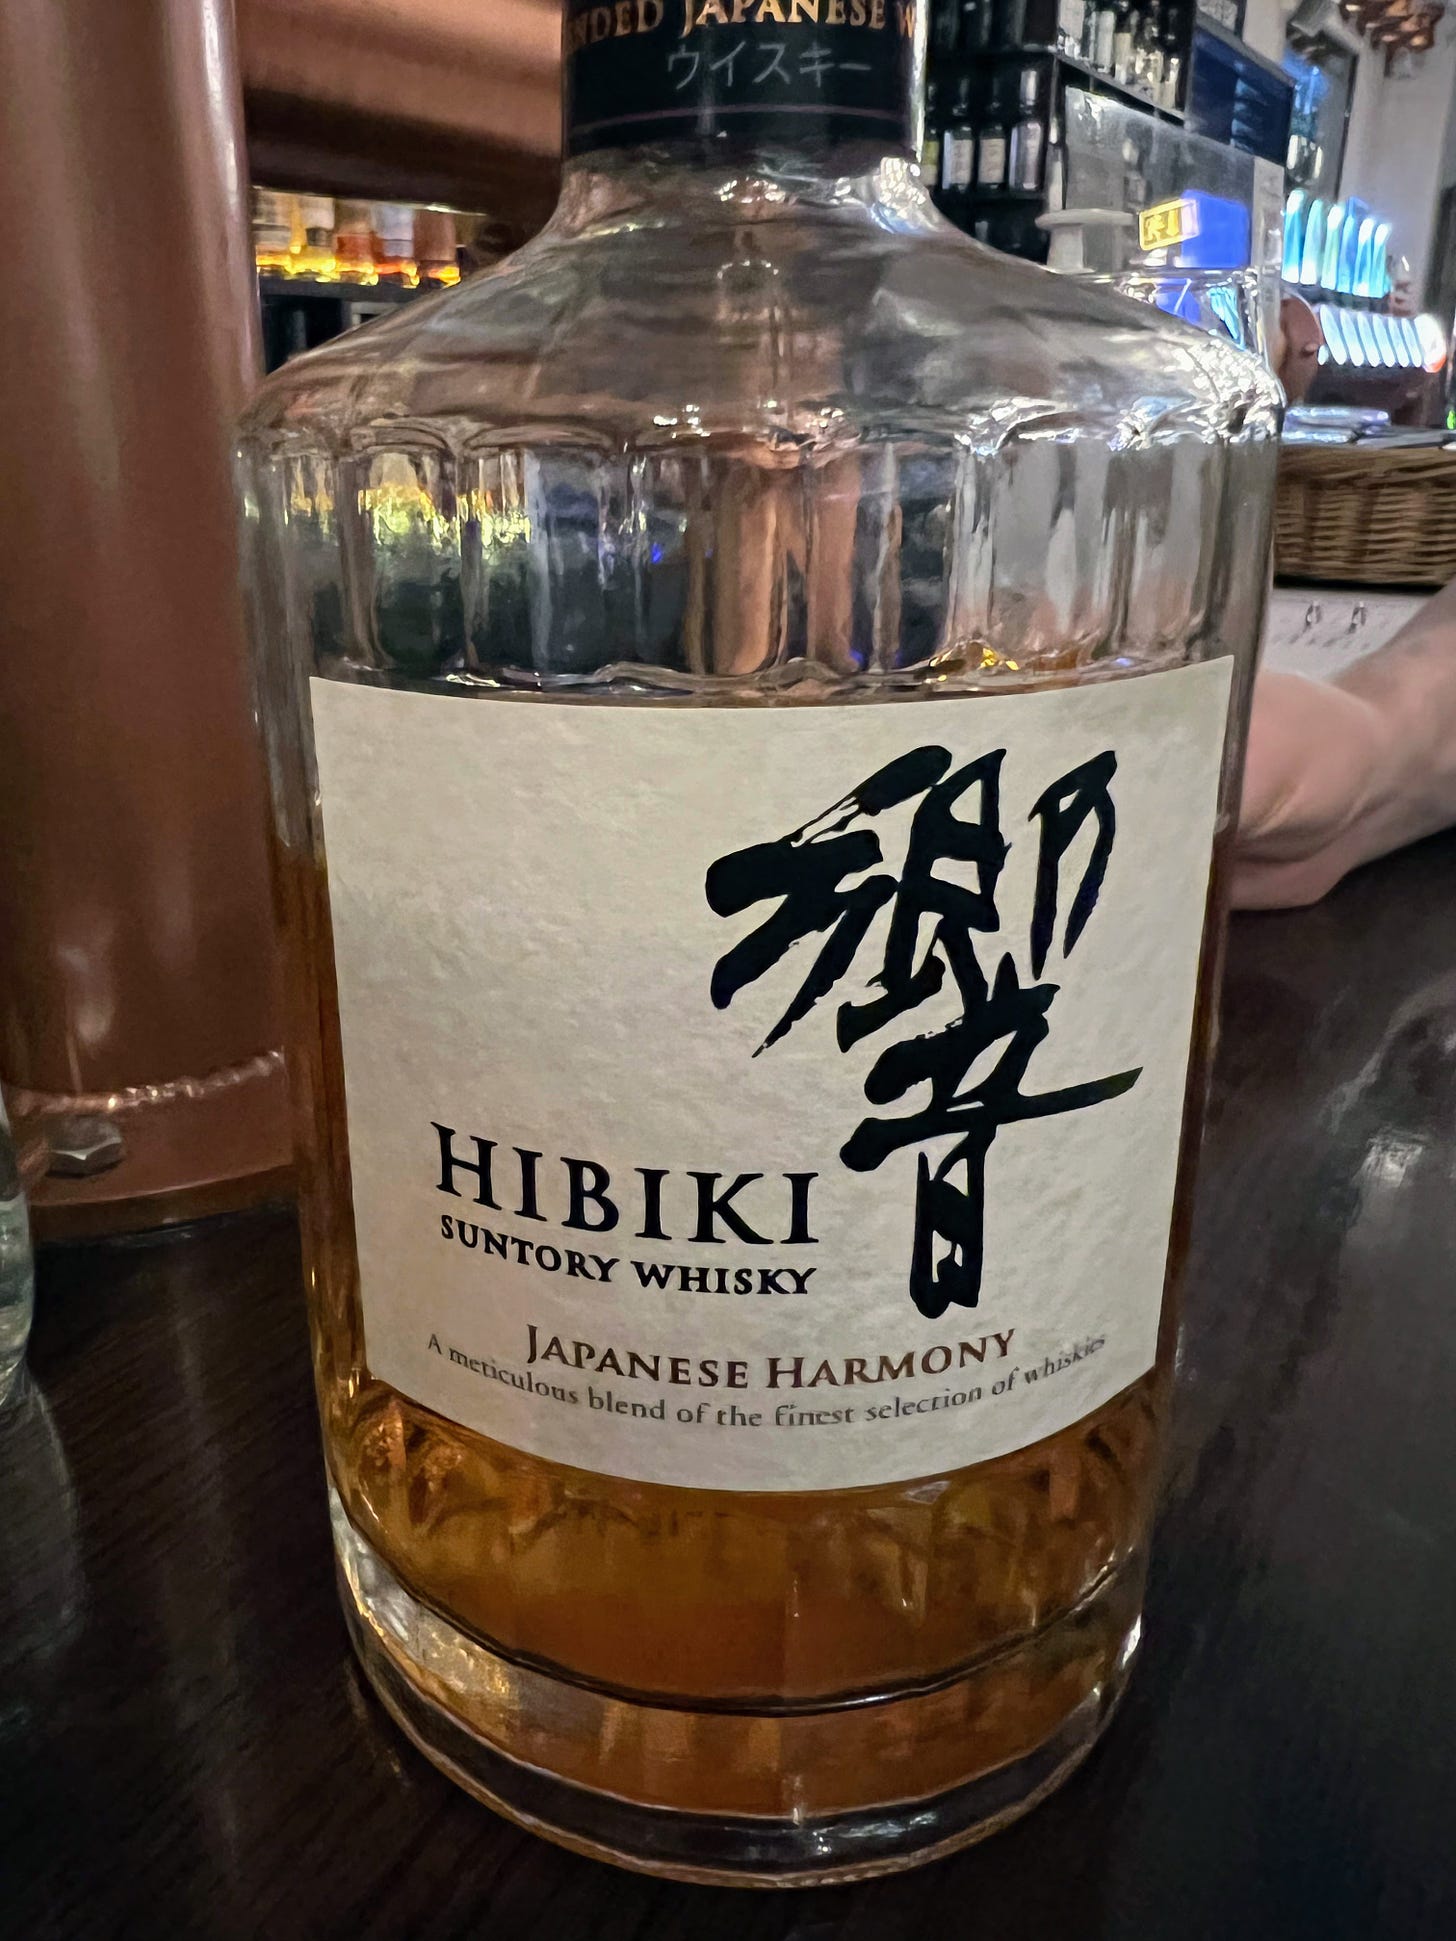 bottle of Hibiki Japanese Harmony whisky